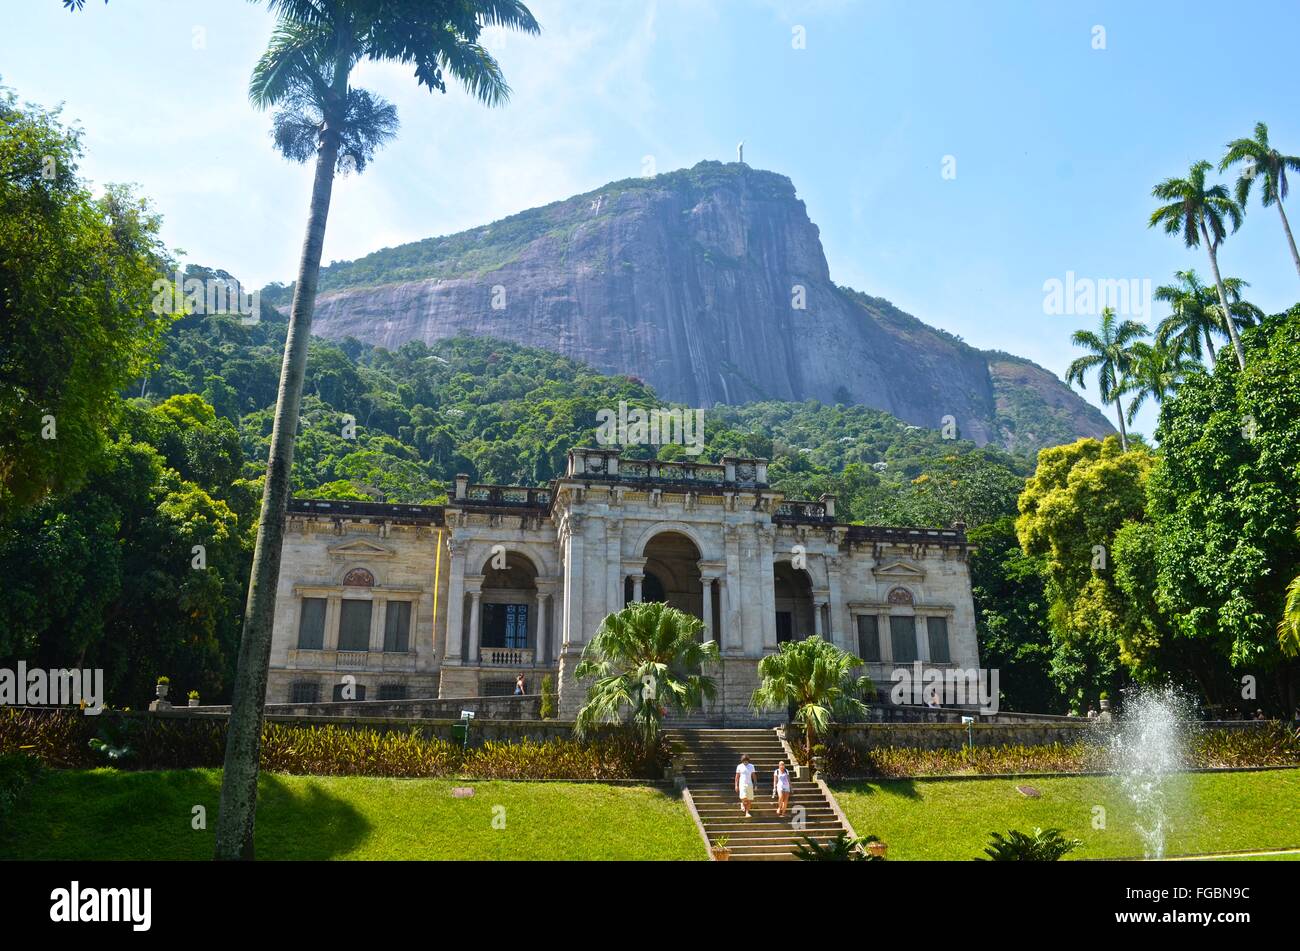 Parque Lage and the Corcovado, Rio de Janeiro, Brazil Stock Photo